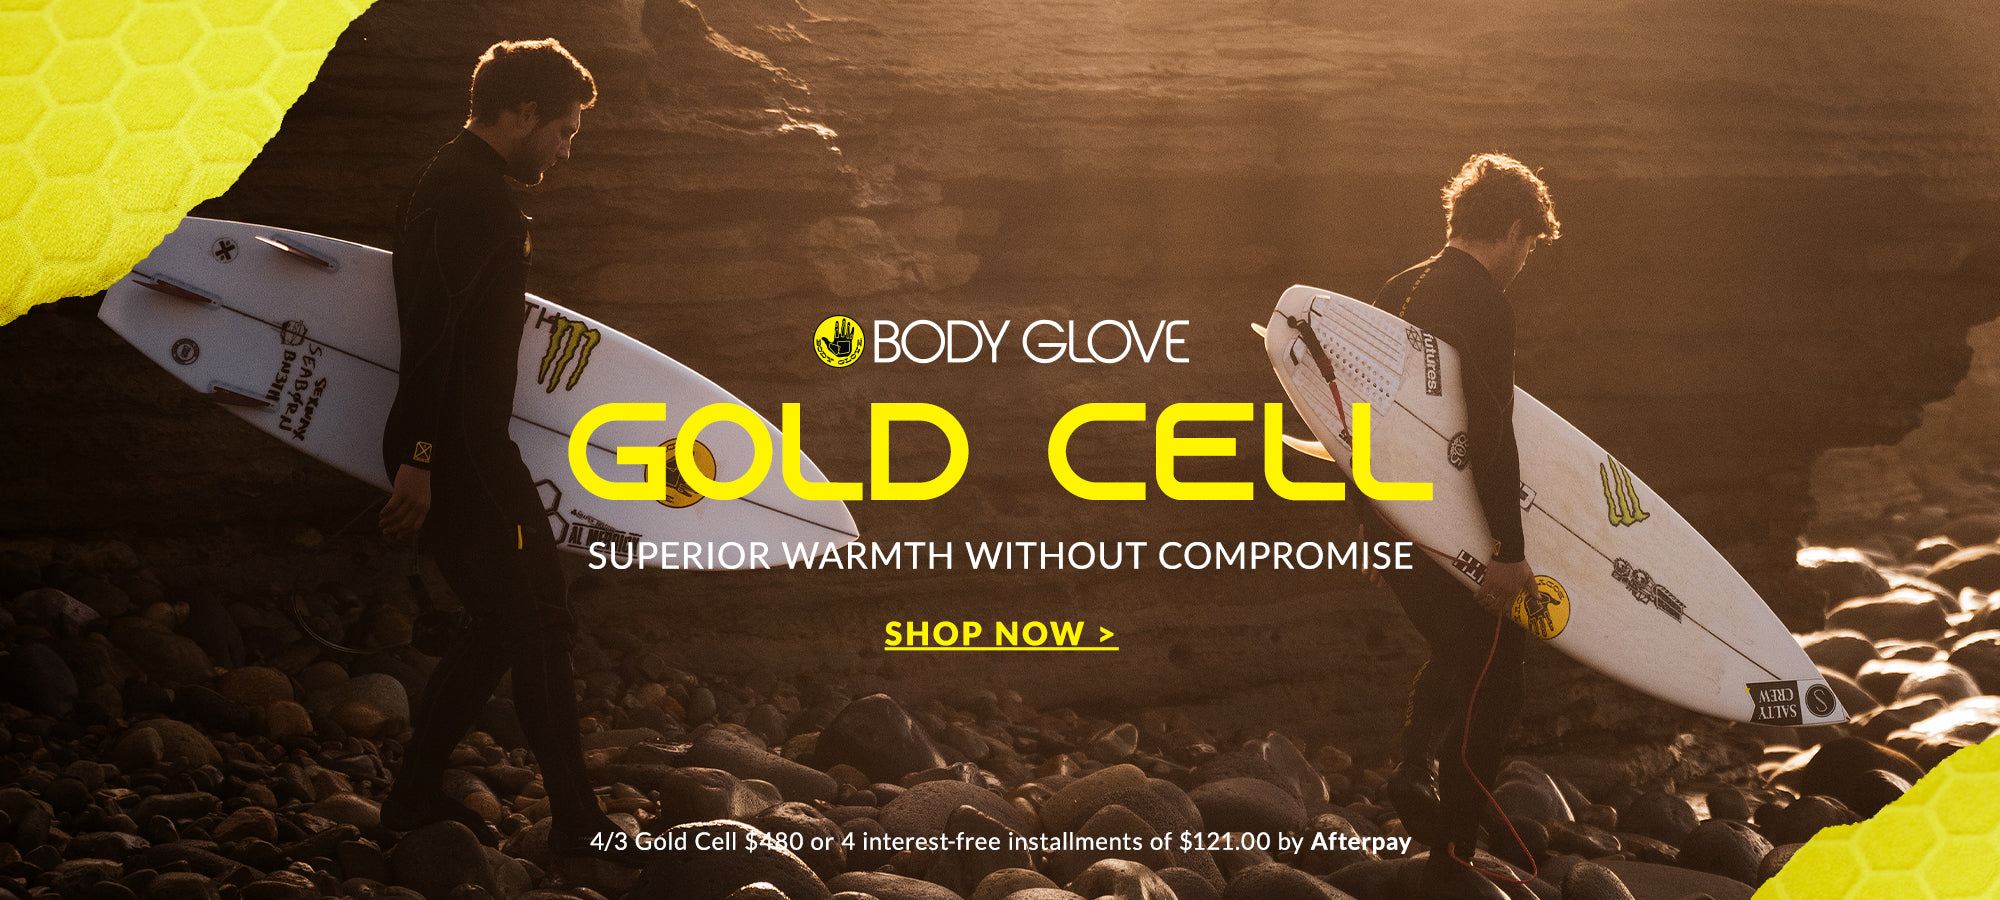 Body Glove - Ensemble Sport Fille 4 ans RoseNoir Printemps/Été21